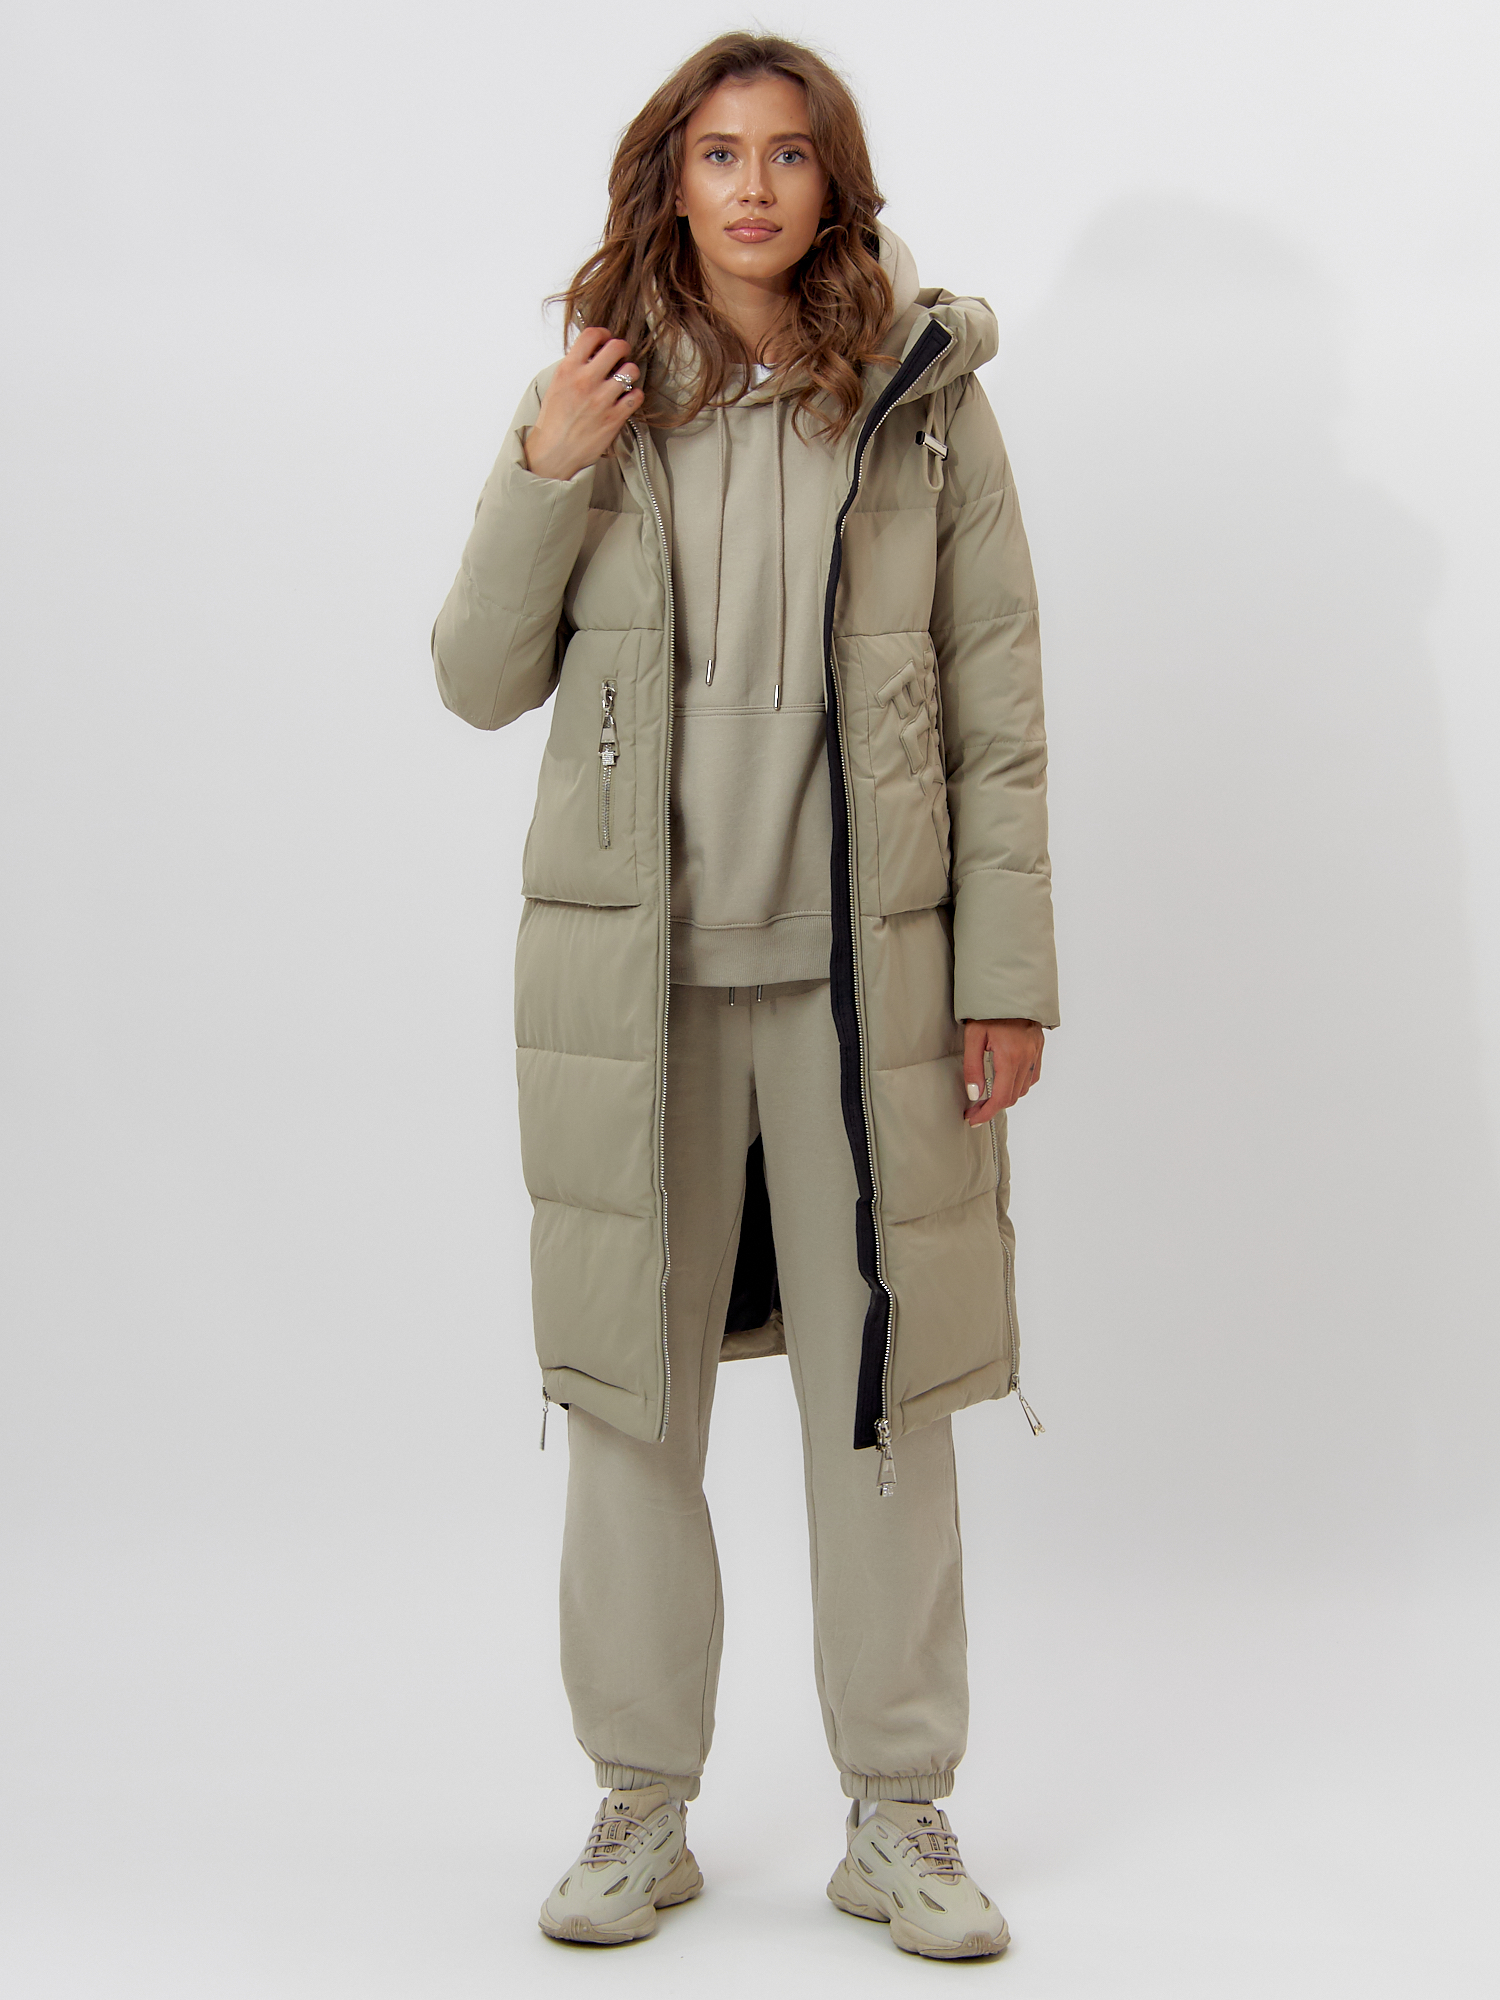 Купить Пальто утепленное женское зимние бирюзового цвета 112253Br